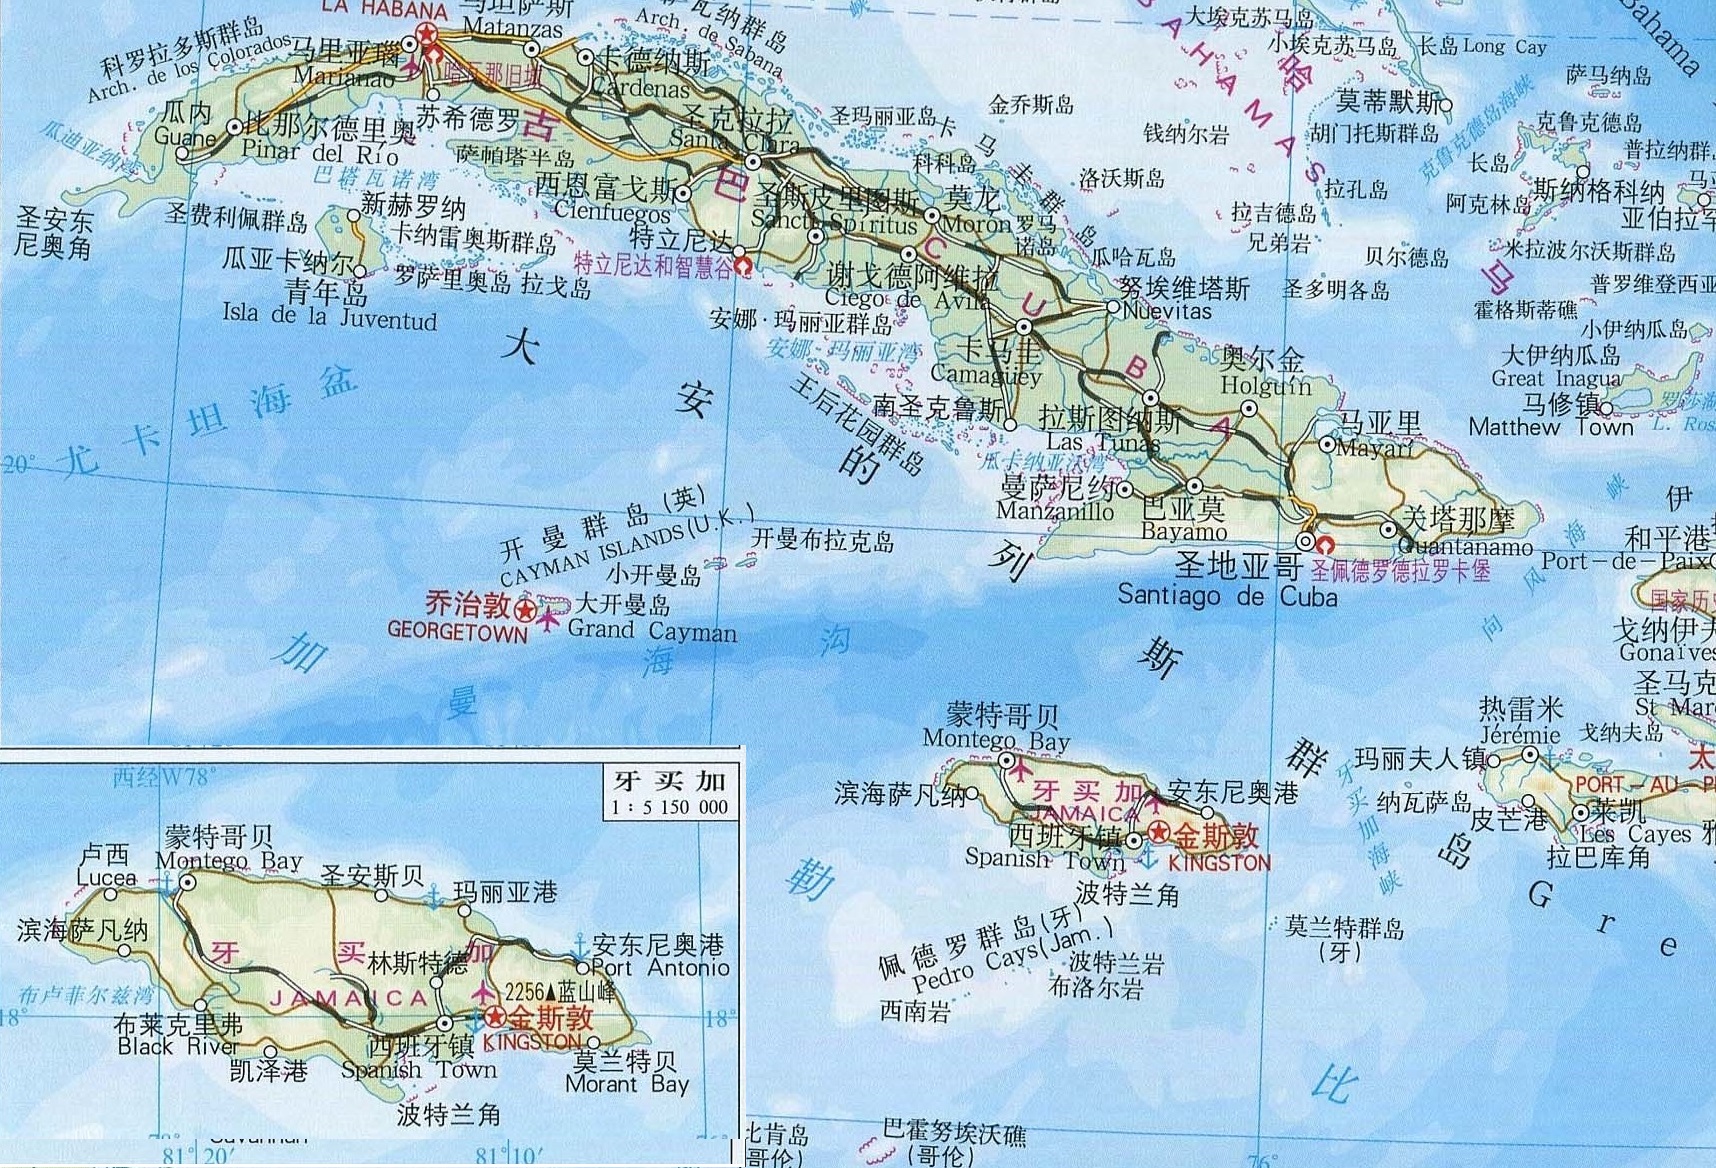 为什么牙买加与圣文森特和格林纳丁斯,两国首都都叫金斯敦?